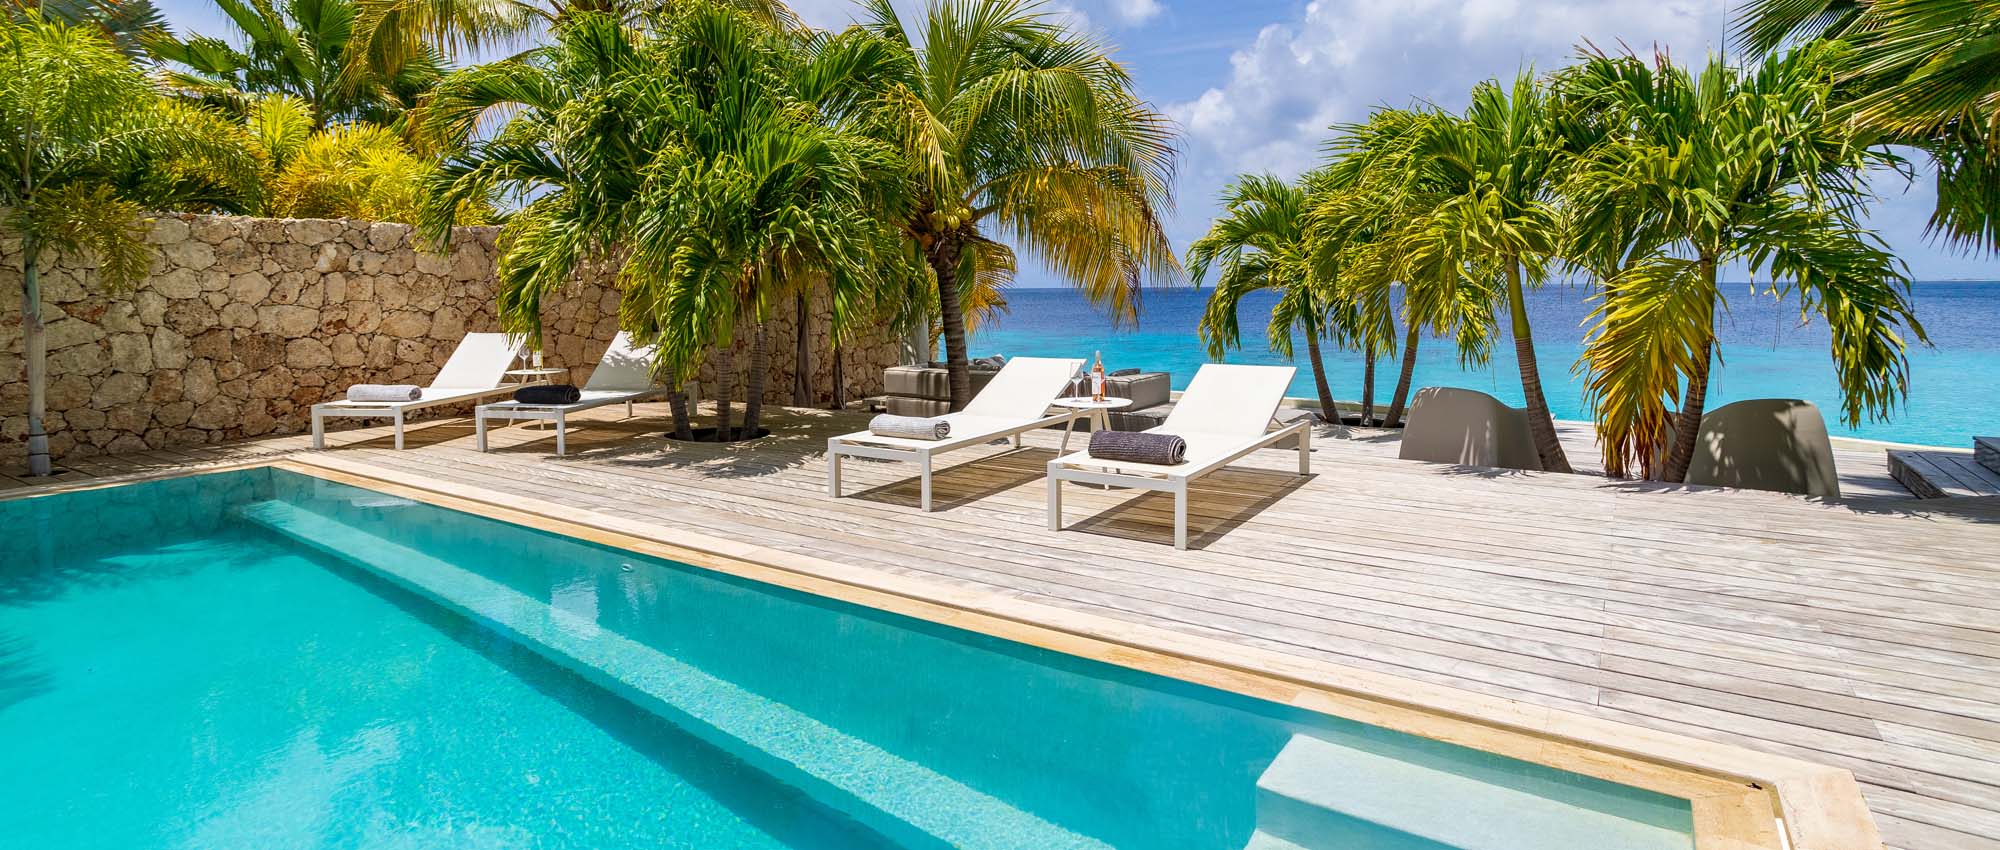 Buitenzwembad met ligstoelen en palmbomen aan de oceaan